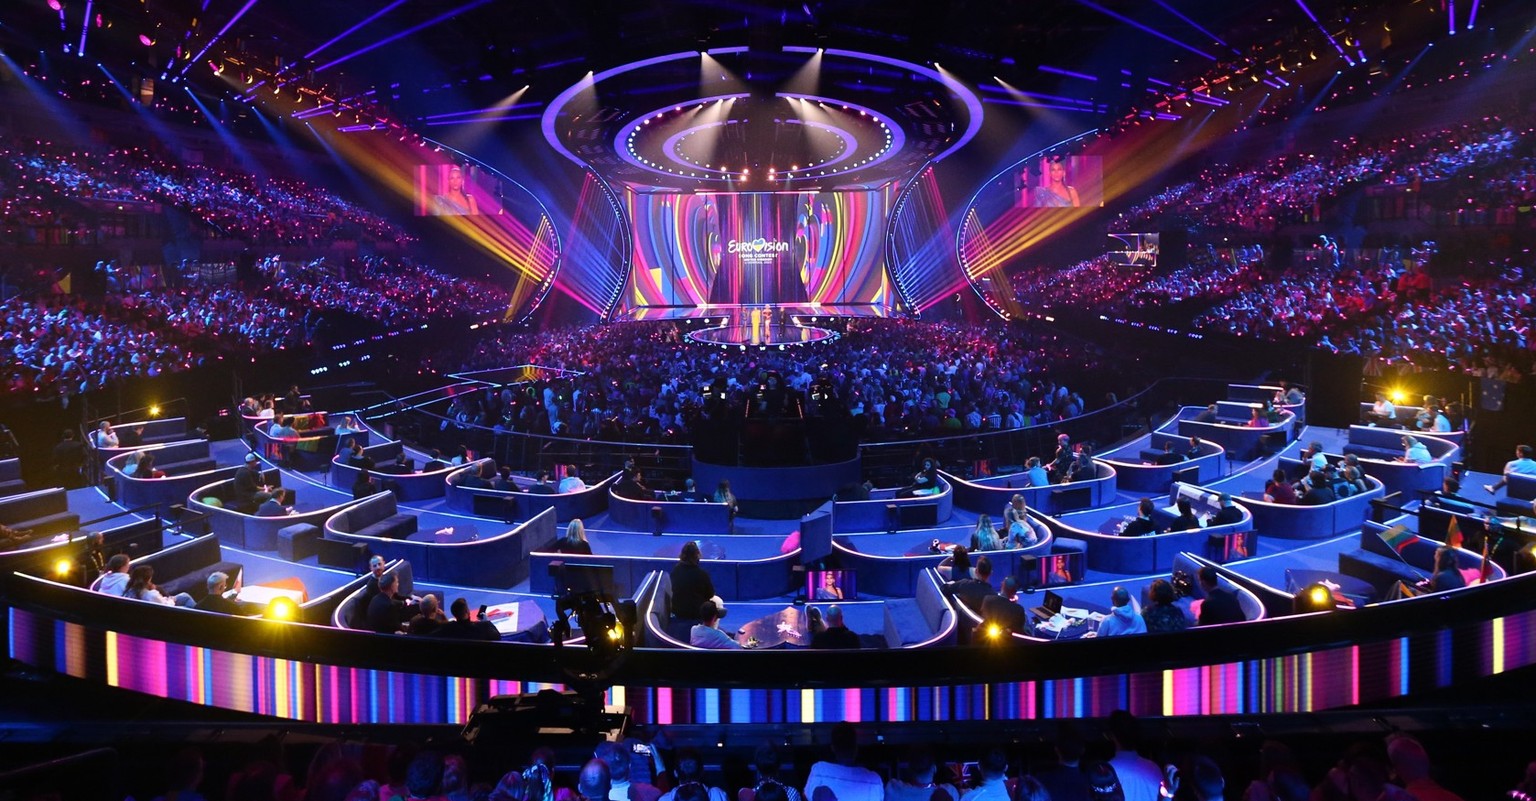 La Liverpool Arena qui a accueilli l'Eurovision Song Contest l'année dernière.